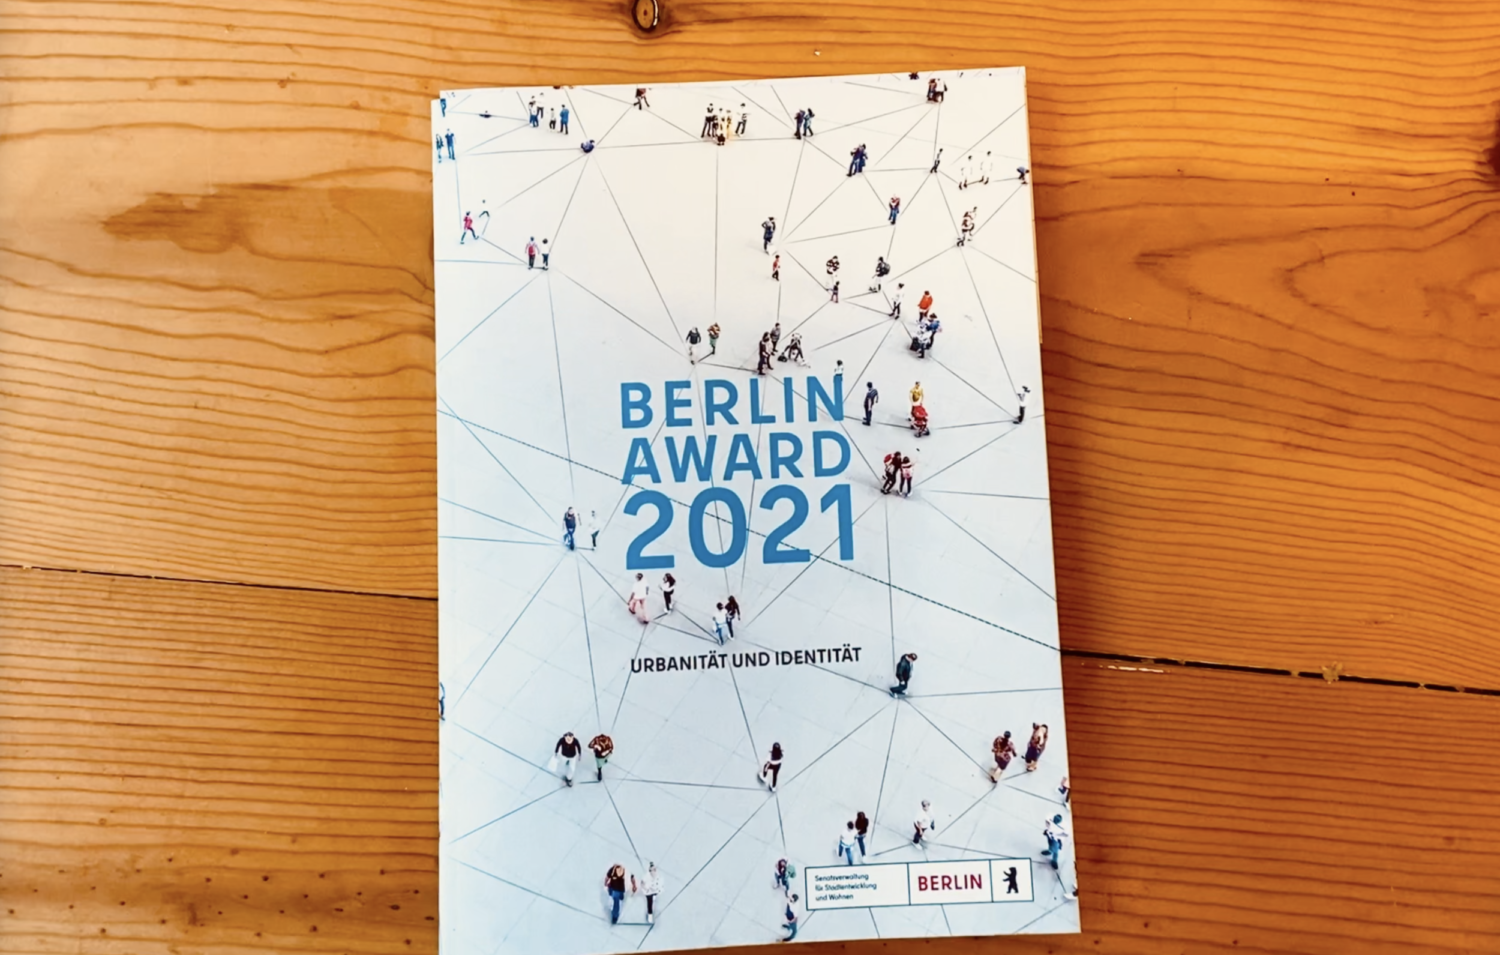 Berlin Award 2021